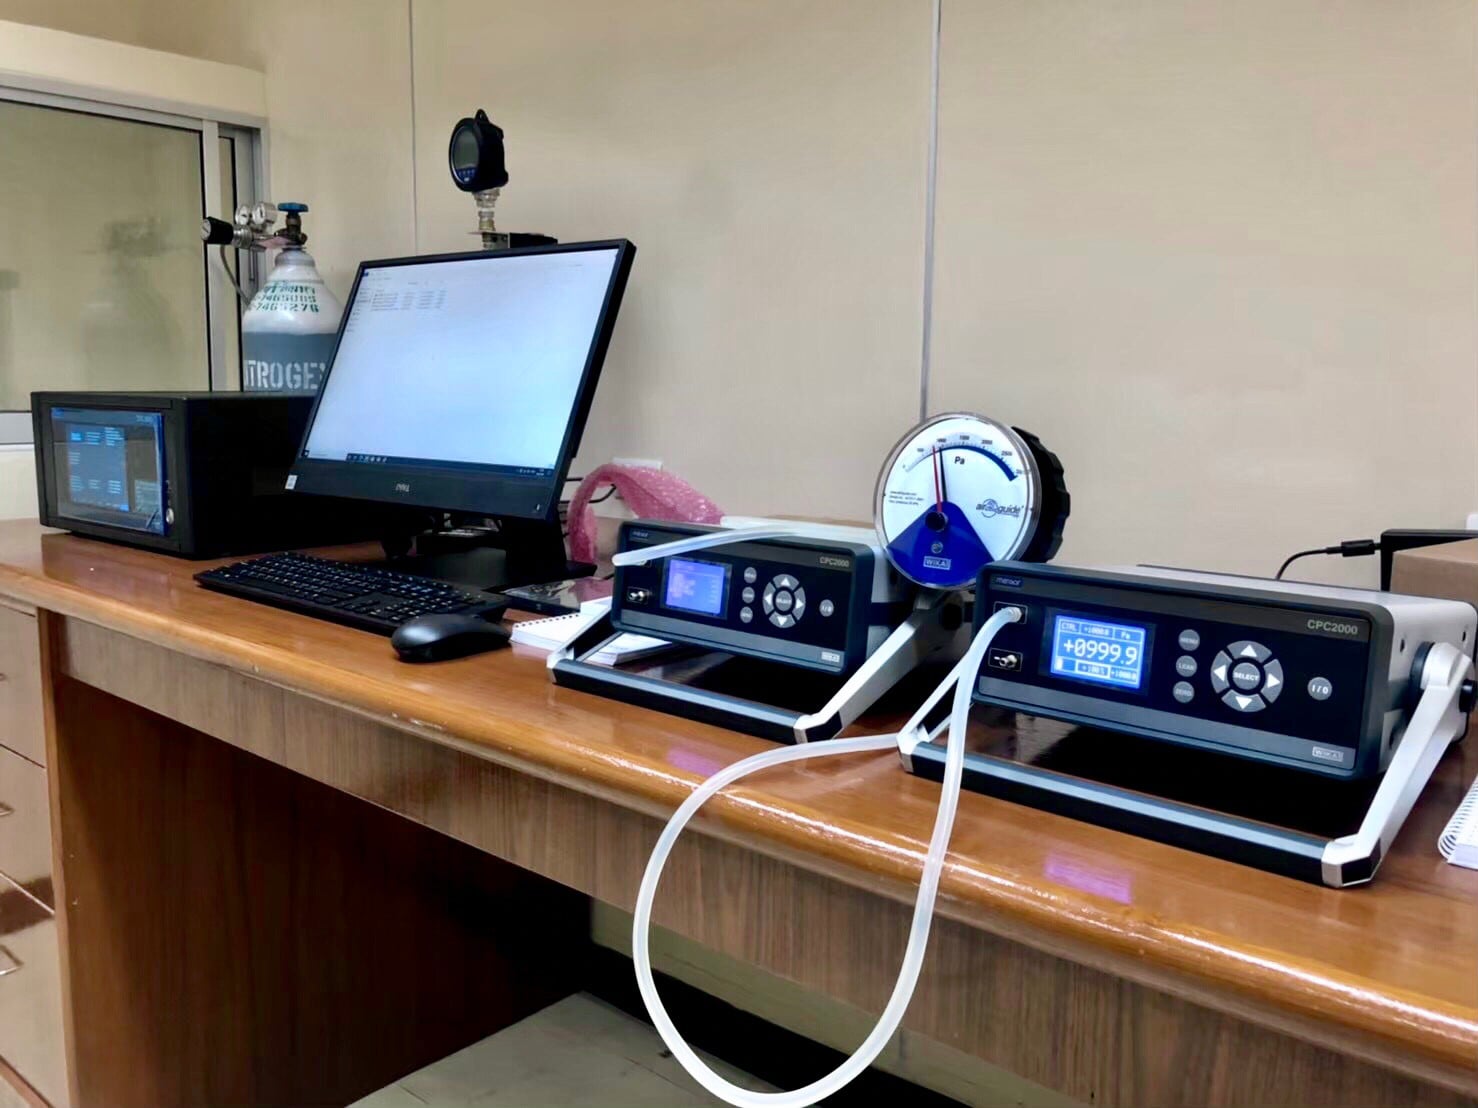 ห้องปฏิบัติการสอบเทียบเครื่องมือวัดความดันทั้งระบบ  และระบบเครื่องวัดความดันโลหิตทางการแพทย์ ( Pressure Laboratory )